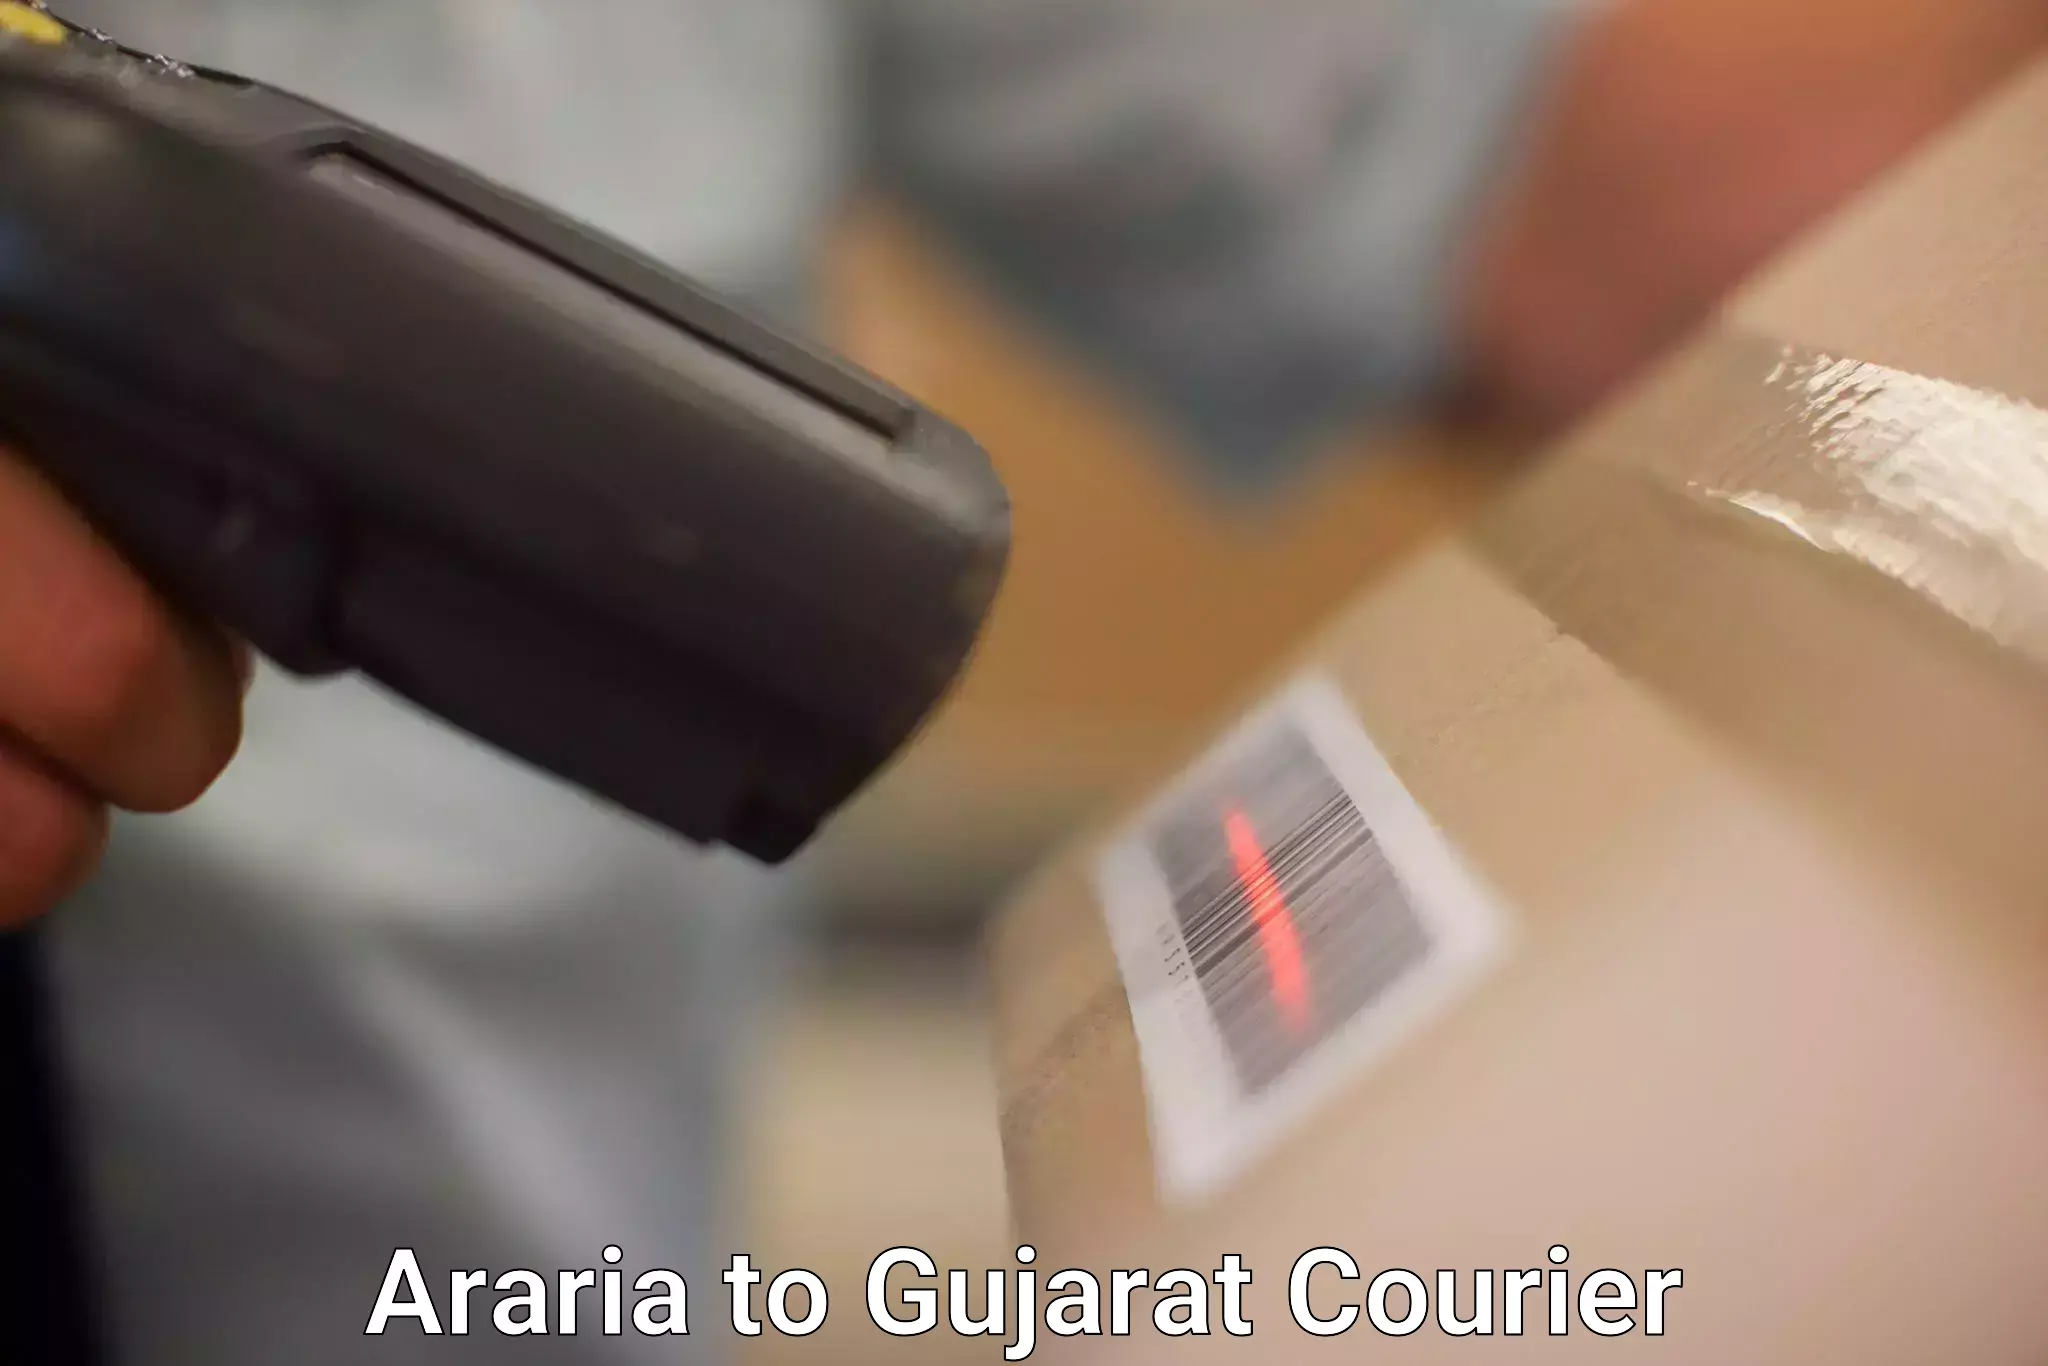 Courier service comparison Araria to Ambaji